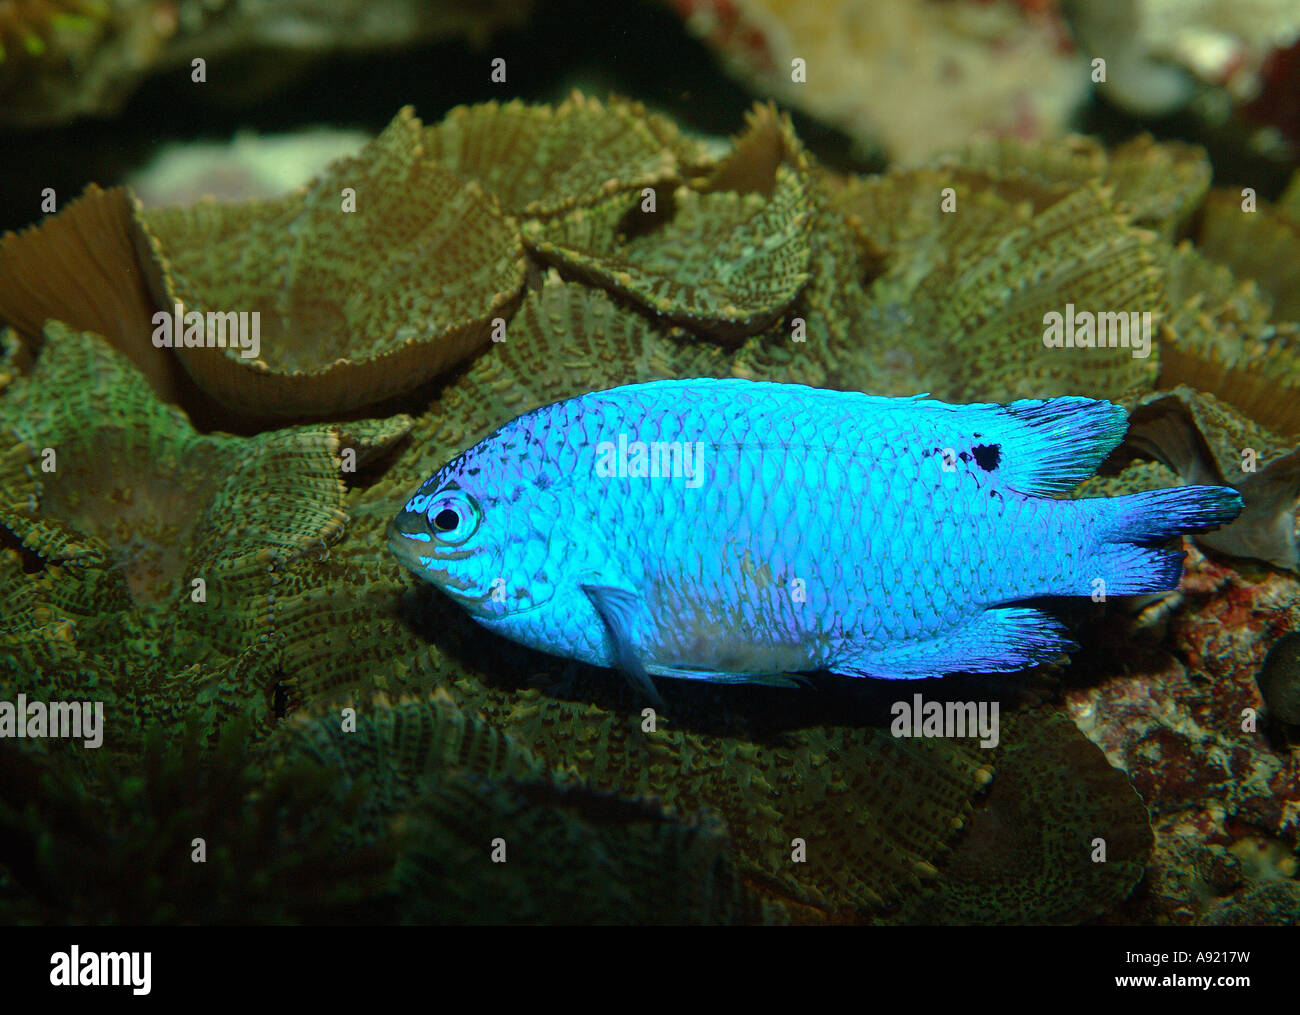 blue chromis / Chromis cyanea Stock Photo